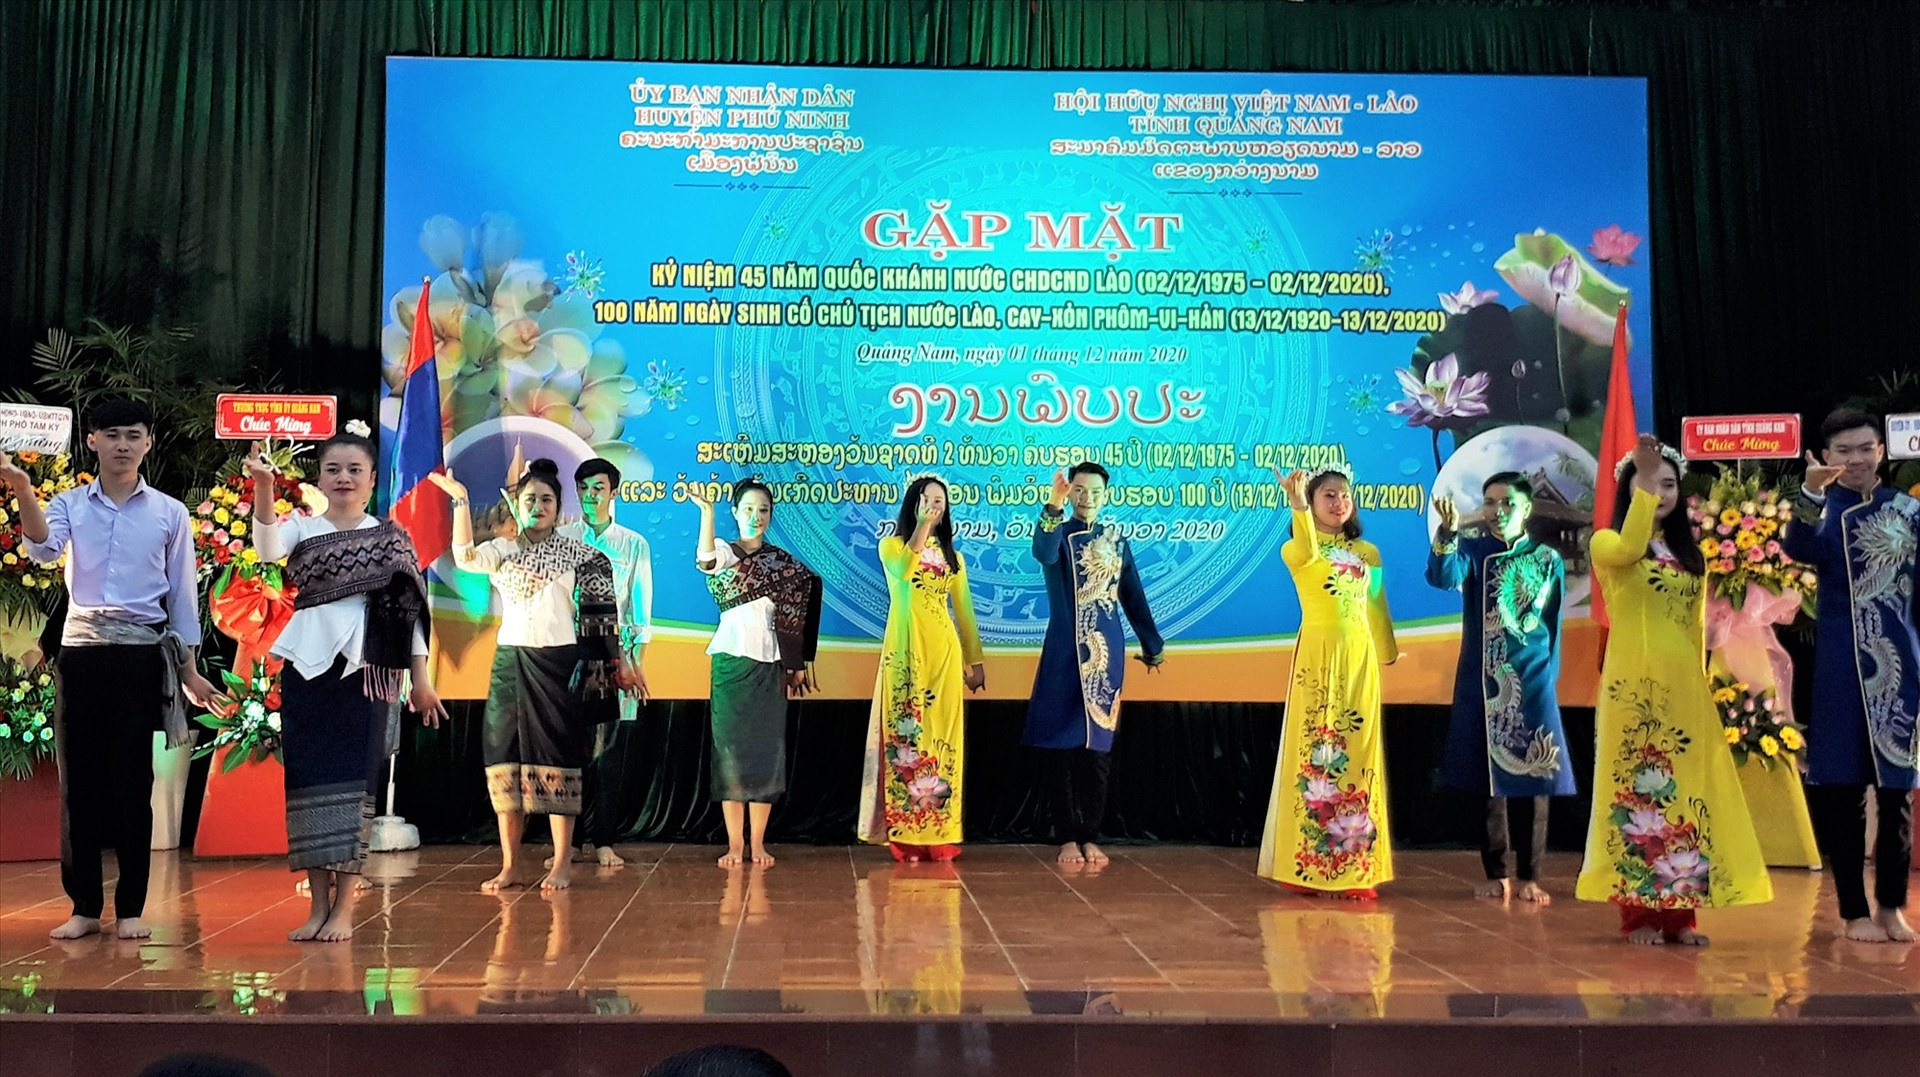 Lưu học sinh Lào tham gia giao lưu văn nghệ nhân gặp mặt kỷ niệm 45 năm Quốc khánh nước CHDCND Lào. Ảnh: ALĂNG NGƯỚC